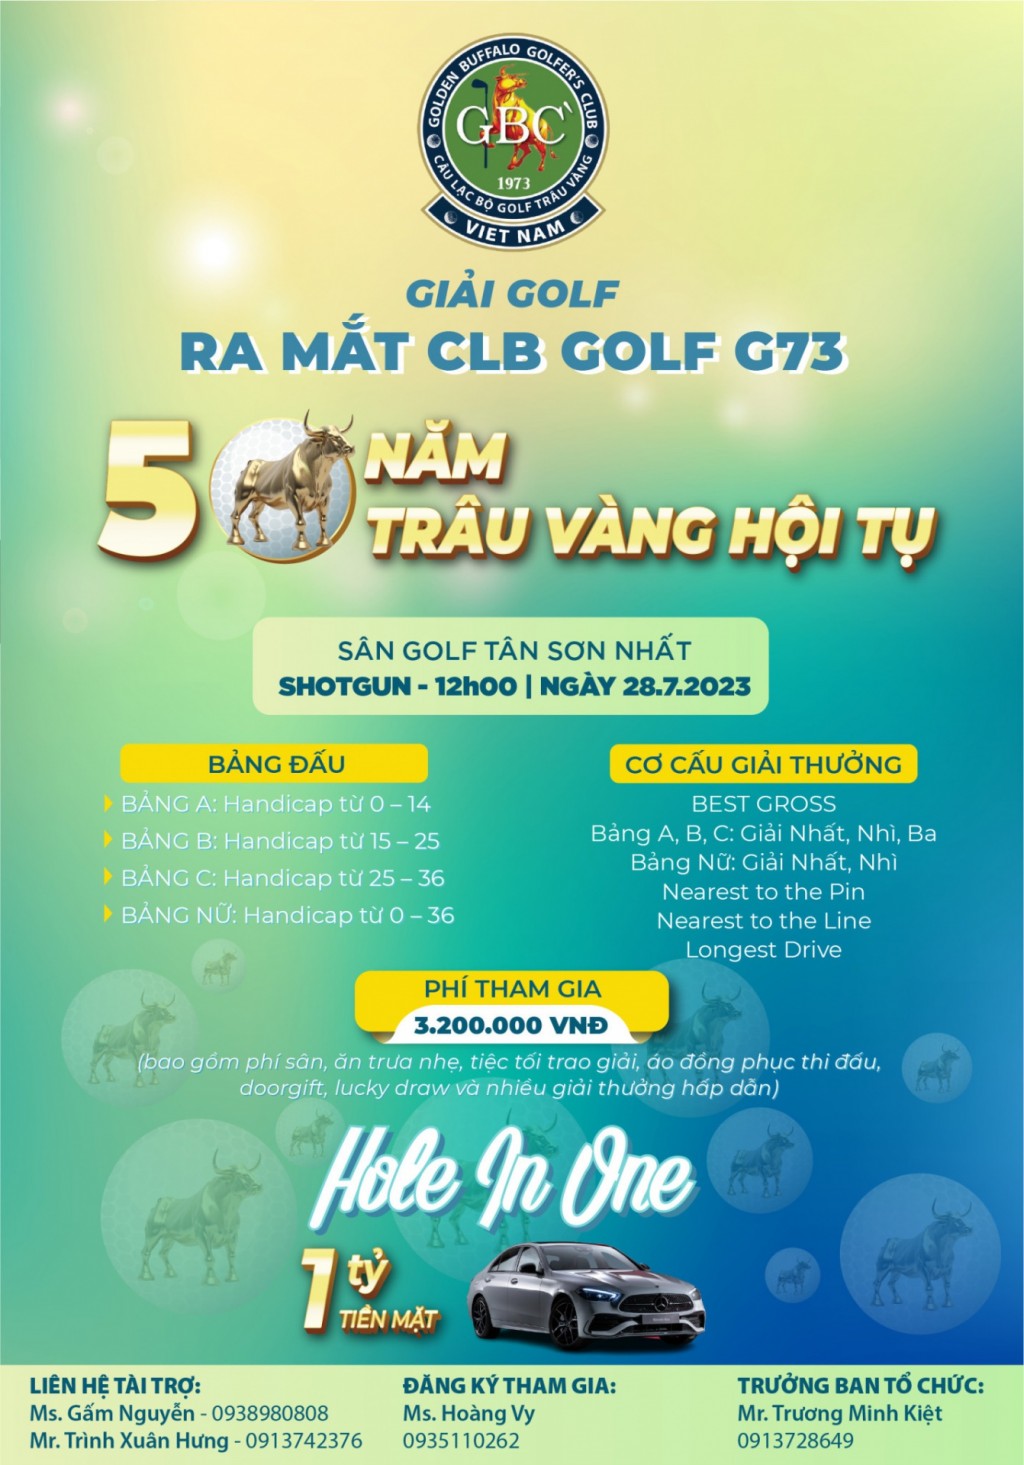 Giải golf ra mắt câu lạc bộ Golf G73 - 50 năm Trâu Vàng hội tụ